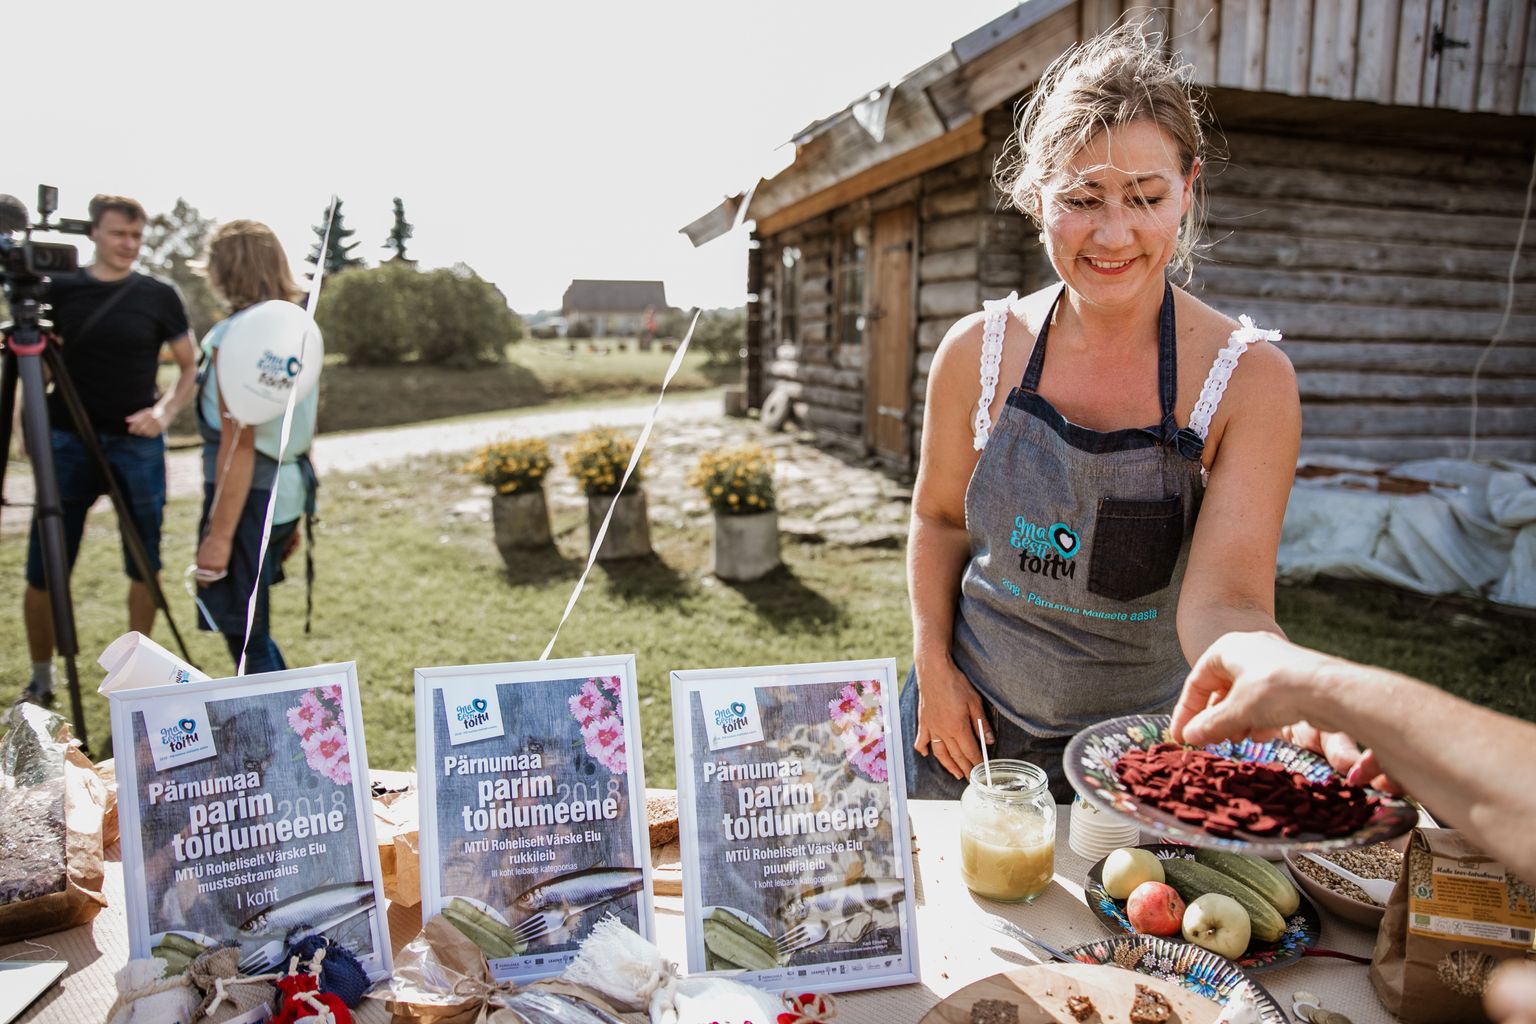 Pärnumaa parim toidumeene 2018 on MTÜ Roheliselt Värske Elu mustasõstramaius, mille mõtlesid välja Kadri Kontkar ja Merle Einola.